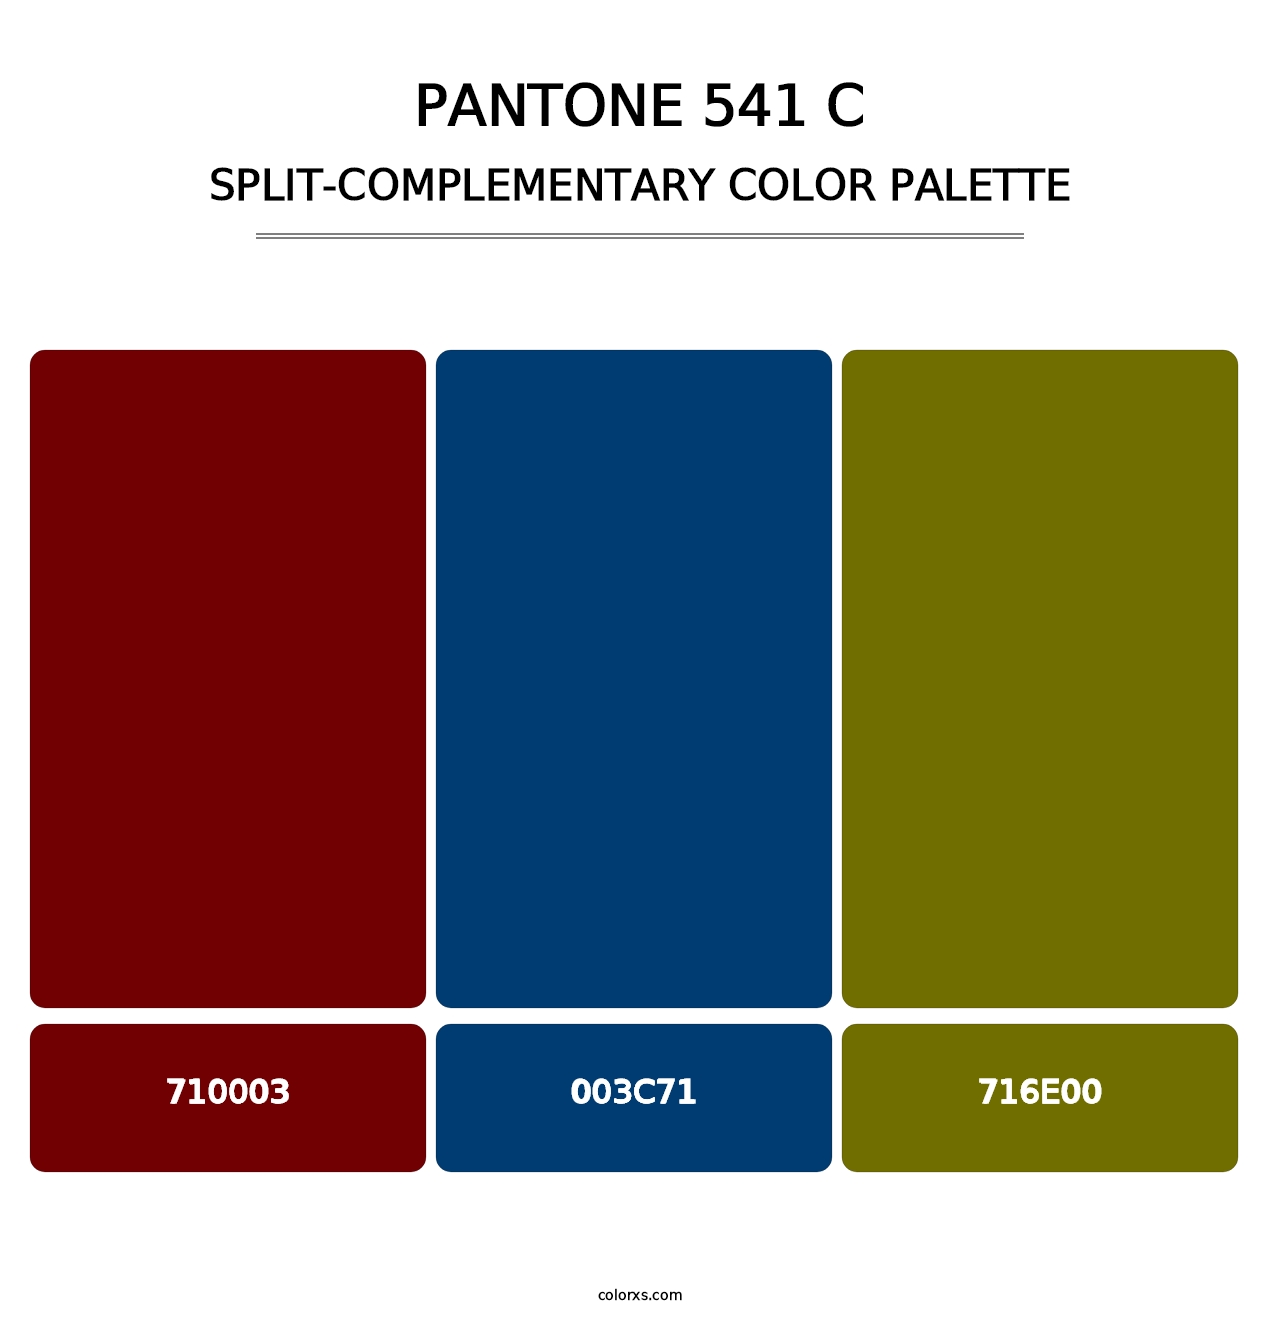 PANTONE 541 C - Split-Complementary Color Palette